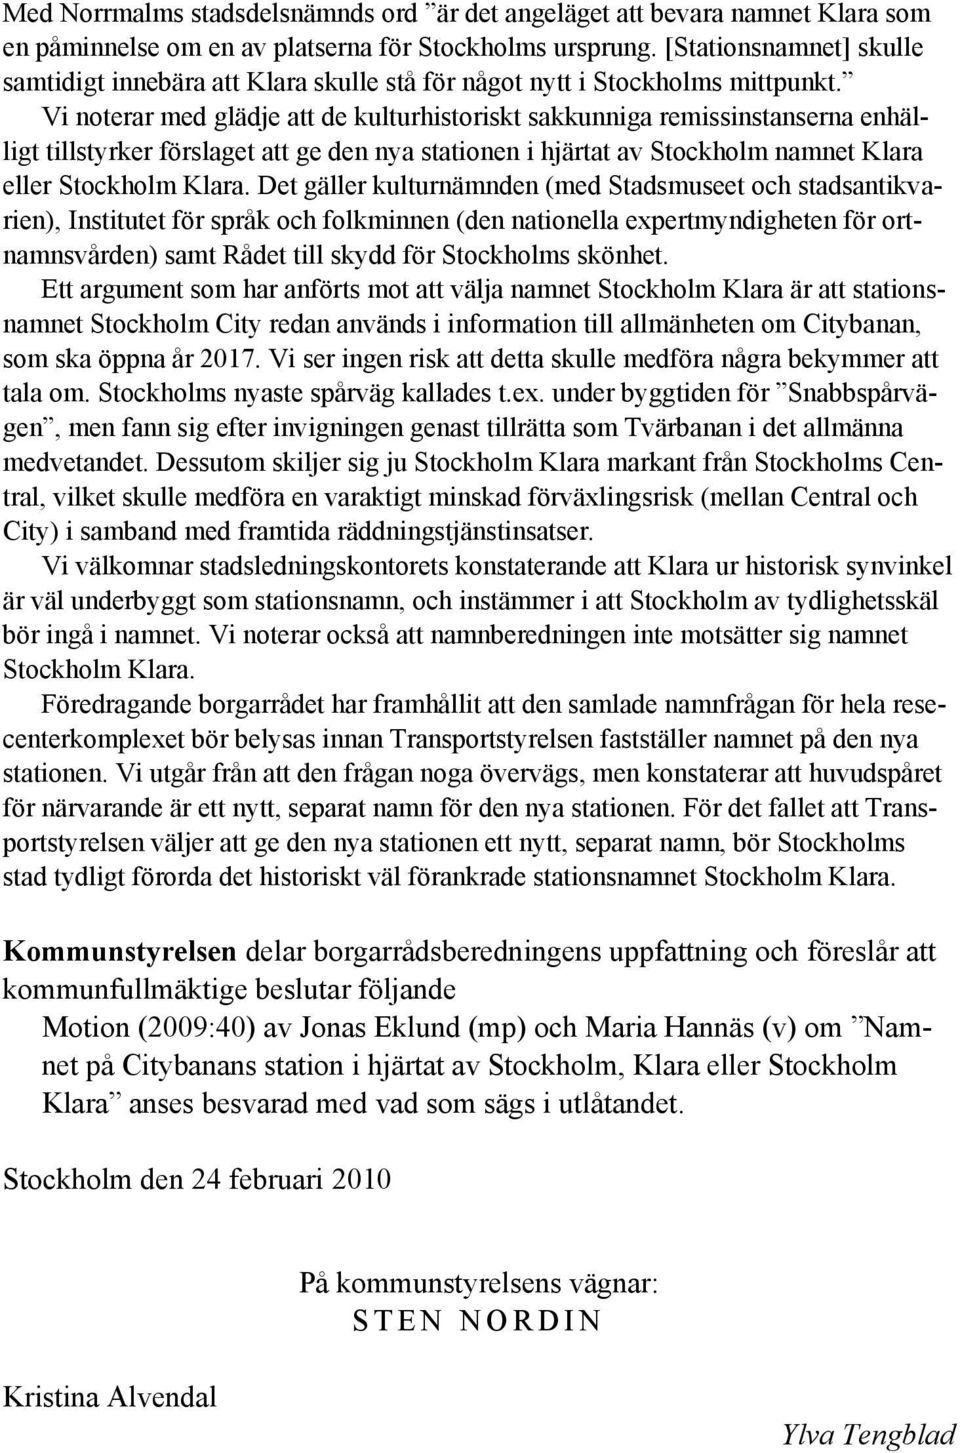 Vi noterar med glädje att de kulturhistoriskt sakkunniga remissinstanserna enhälligt tillstyrker förslaget att ge den nya stationen i hjärtat av Stockholm namnet Klara eller Stockholm Klara.